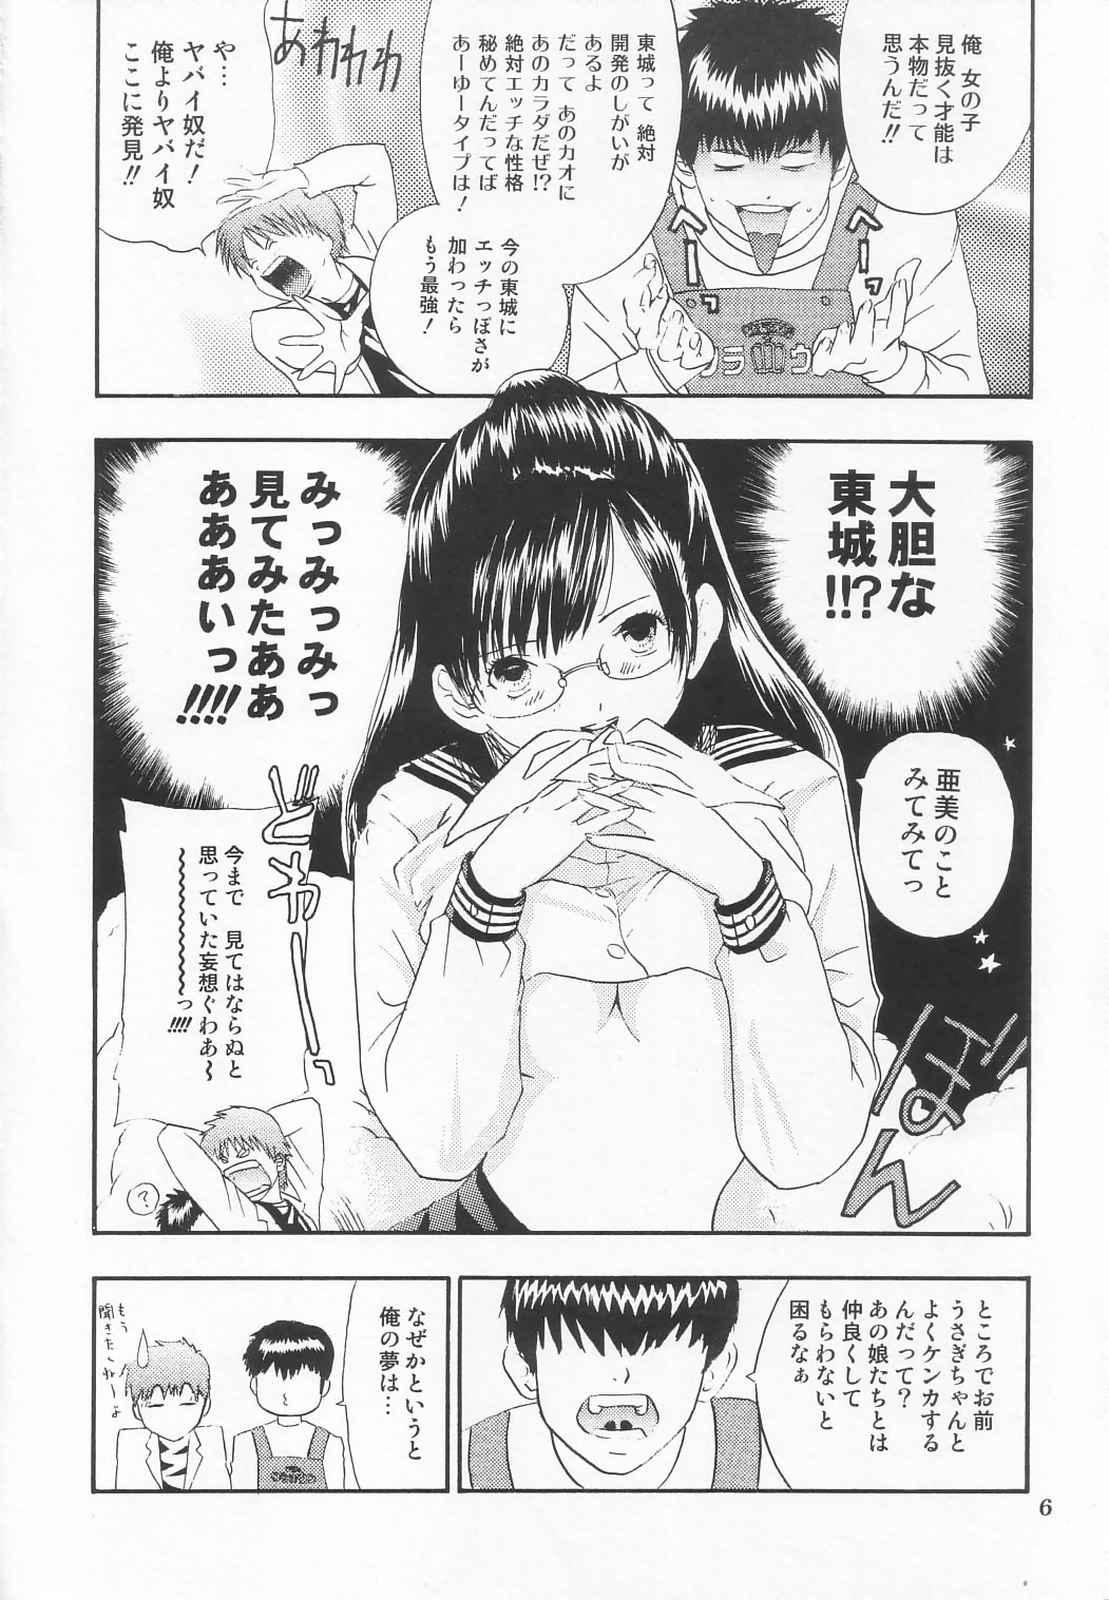 Ass Tokusatsu Magazine x 2003 Fuyu Gou - Sailor moon Ichigo 100 Costume - Page 8